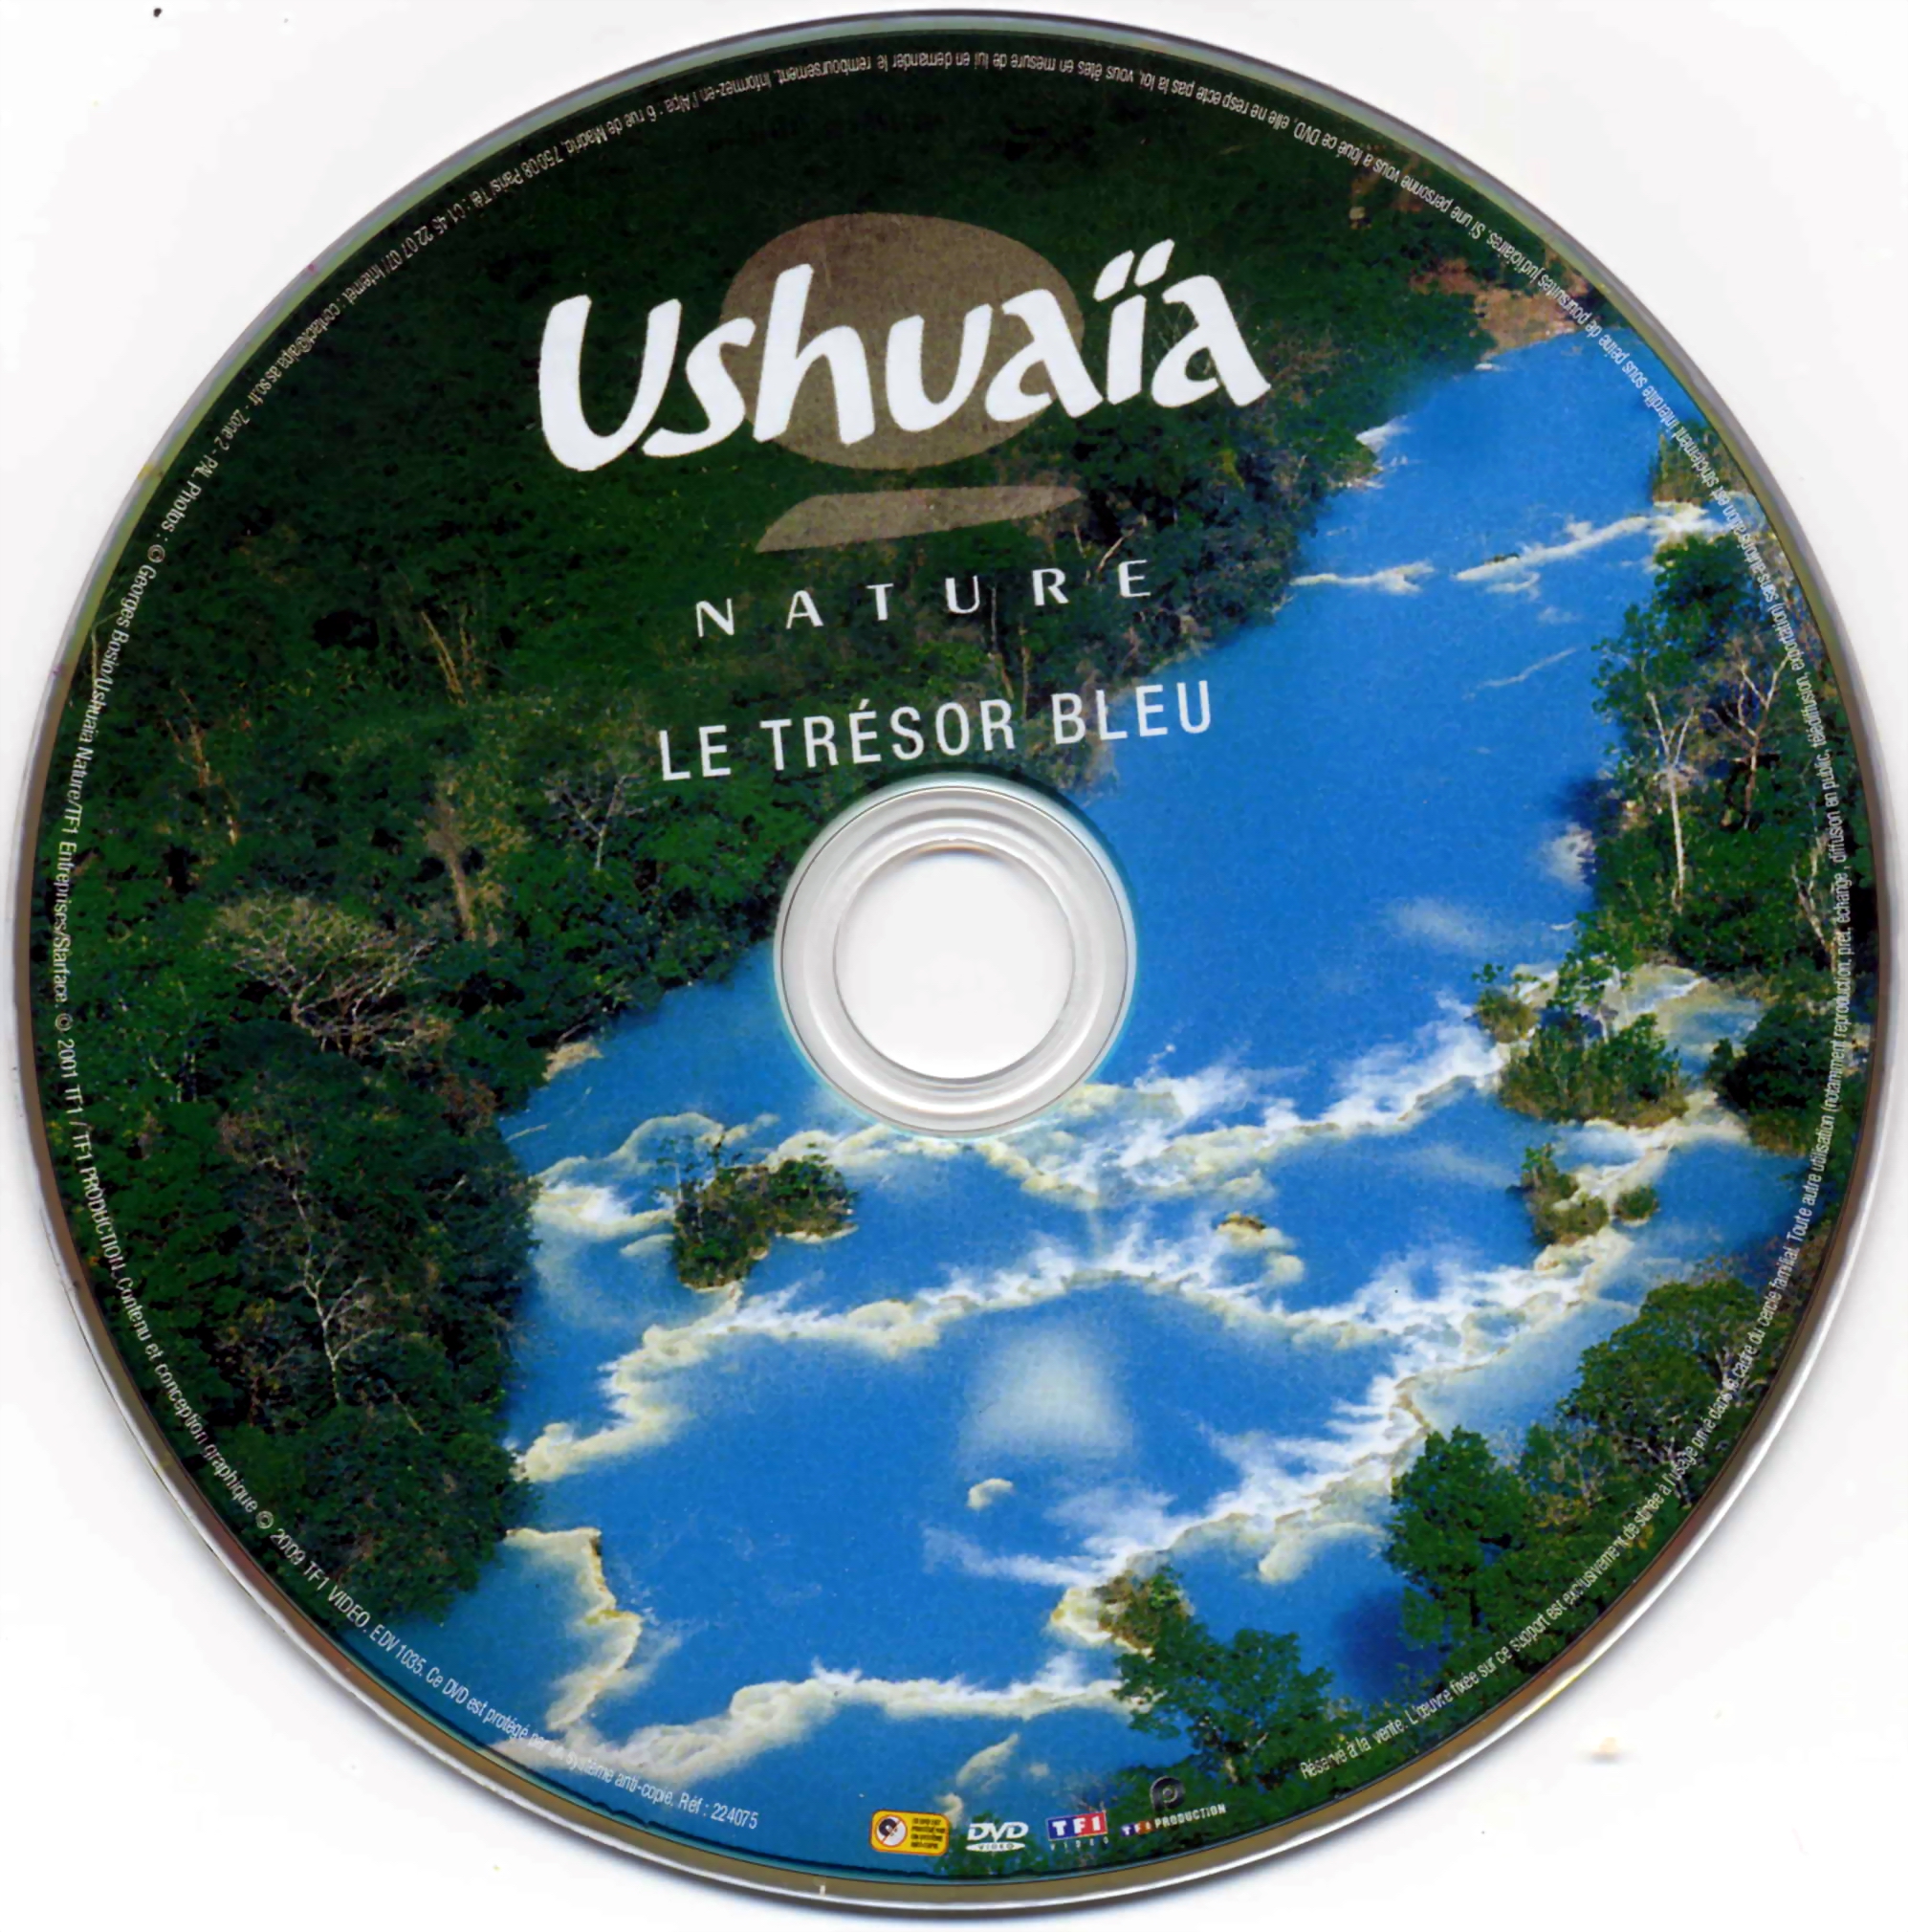 Ushuaia Nature - Le trsor bleu